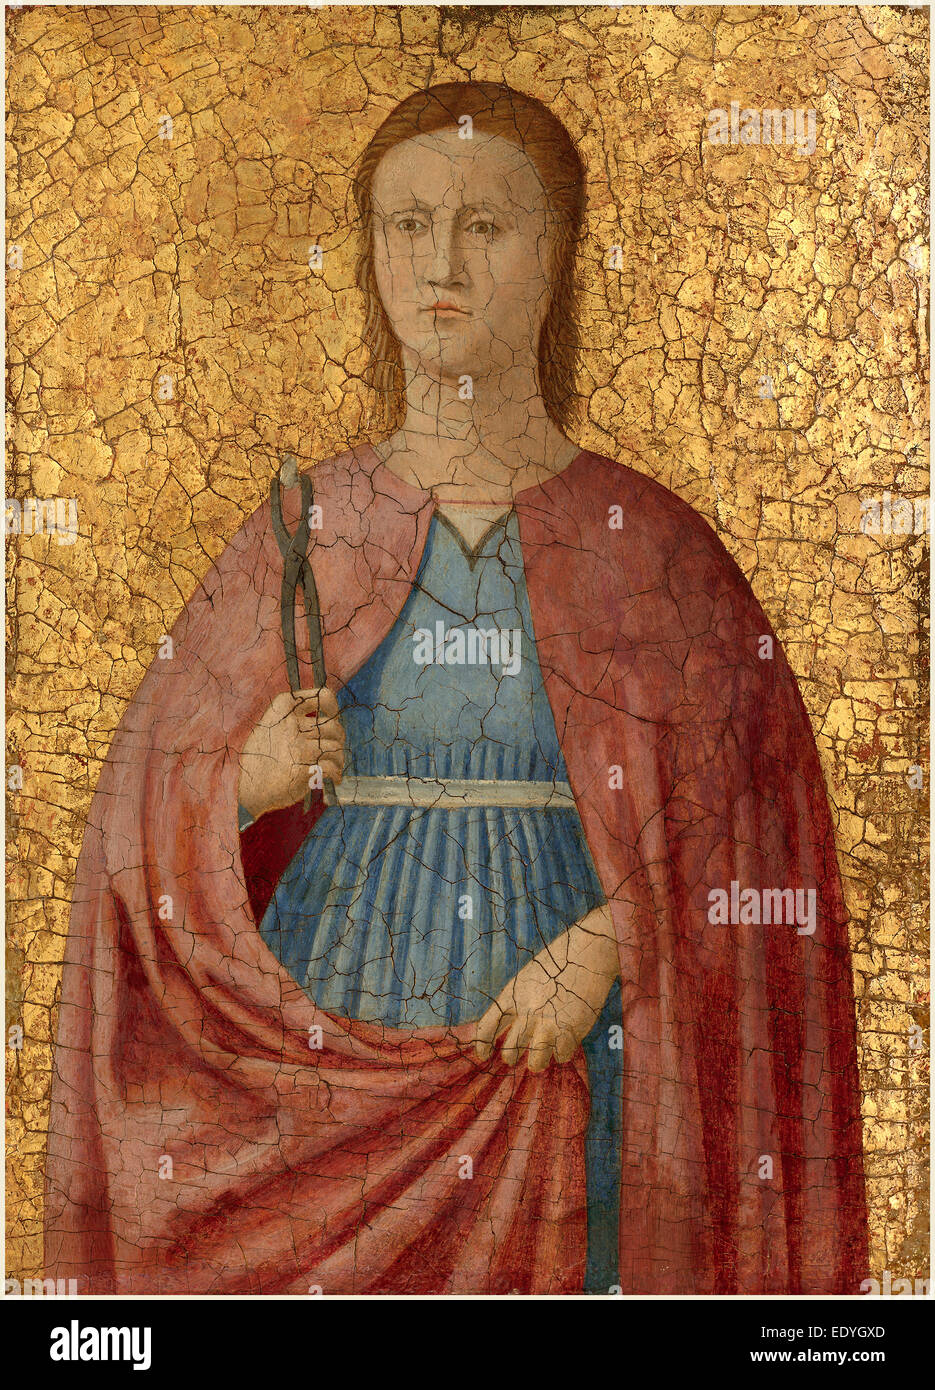 Attribuito a Piero della Francesca, Santa Apollonia, Italiano, c. 1416-1417-1492, c. 1455-1460, tempera su pannello Foto Stock